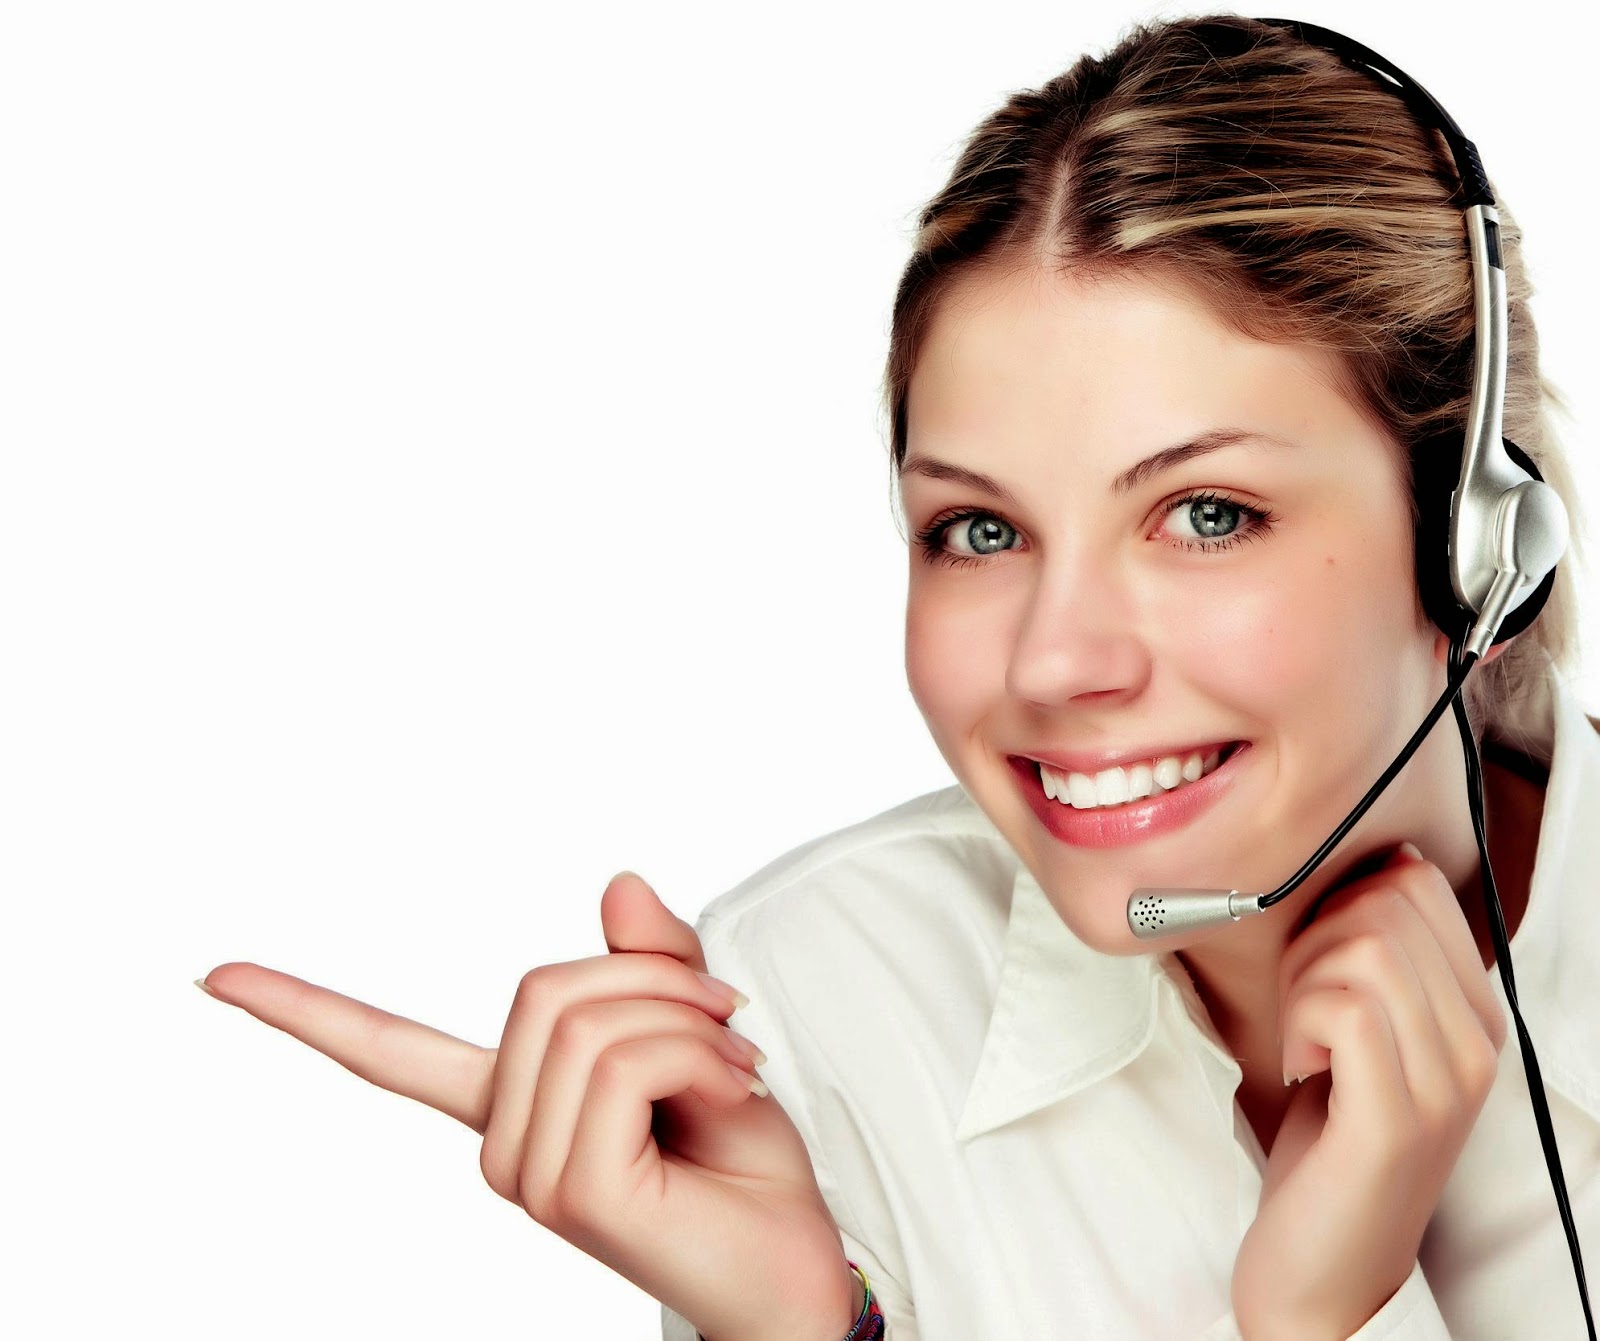 7 Vias para emprender: Atención al cliente, atención al teléfono